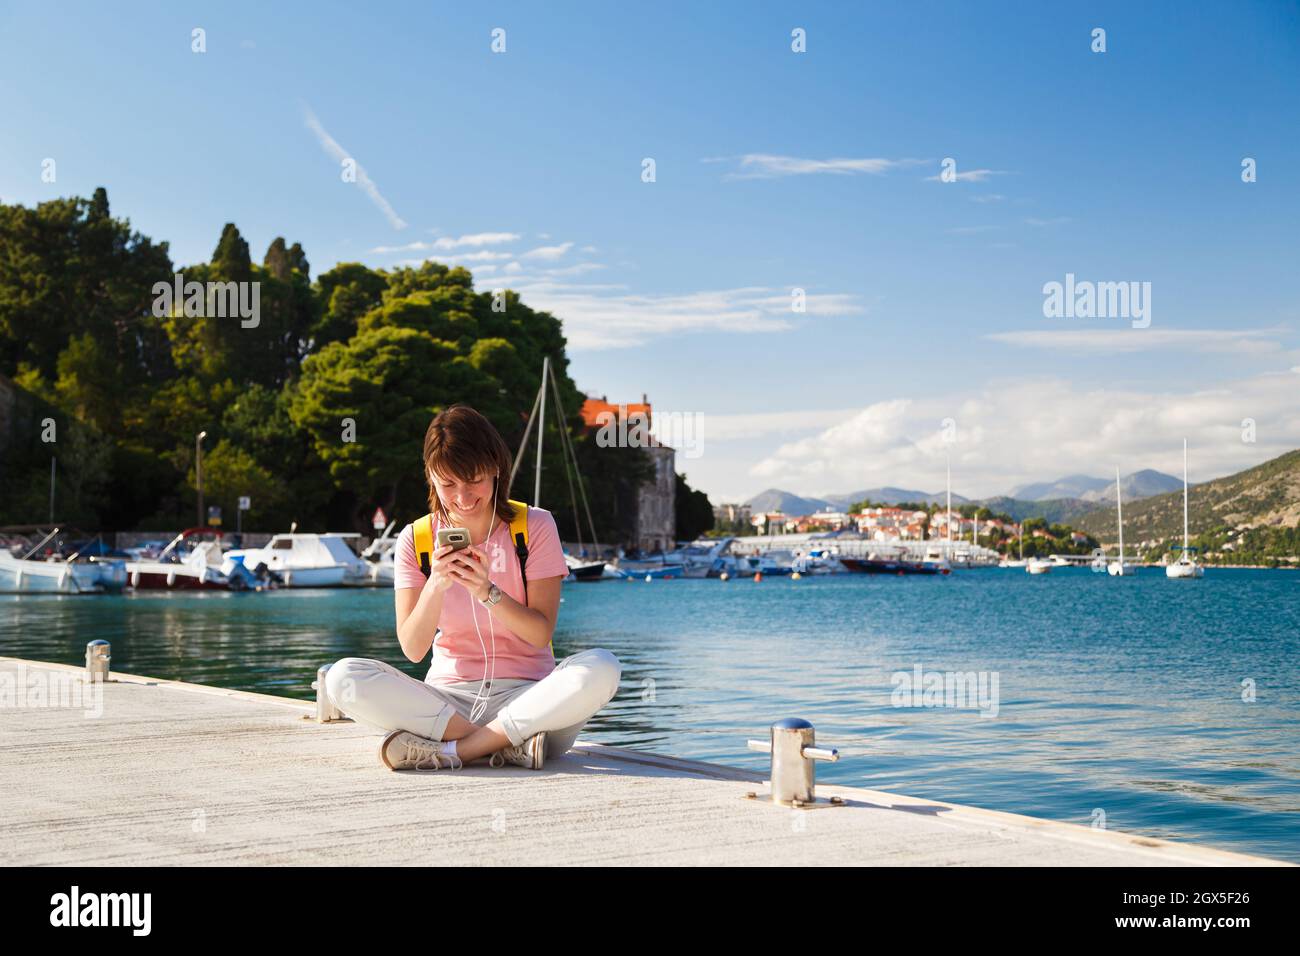 Sorridente giovane femmina turista seduto a gambe incrociate sul molo tenendo cellulare con costa croata in background. Giornata di sole a Dubrovnik, Croazia. Concetto di stile di vita di viaggio Foto Stock